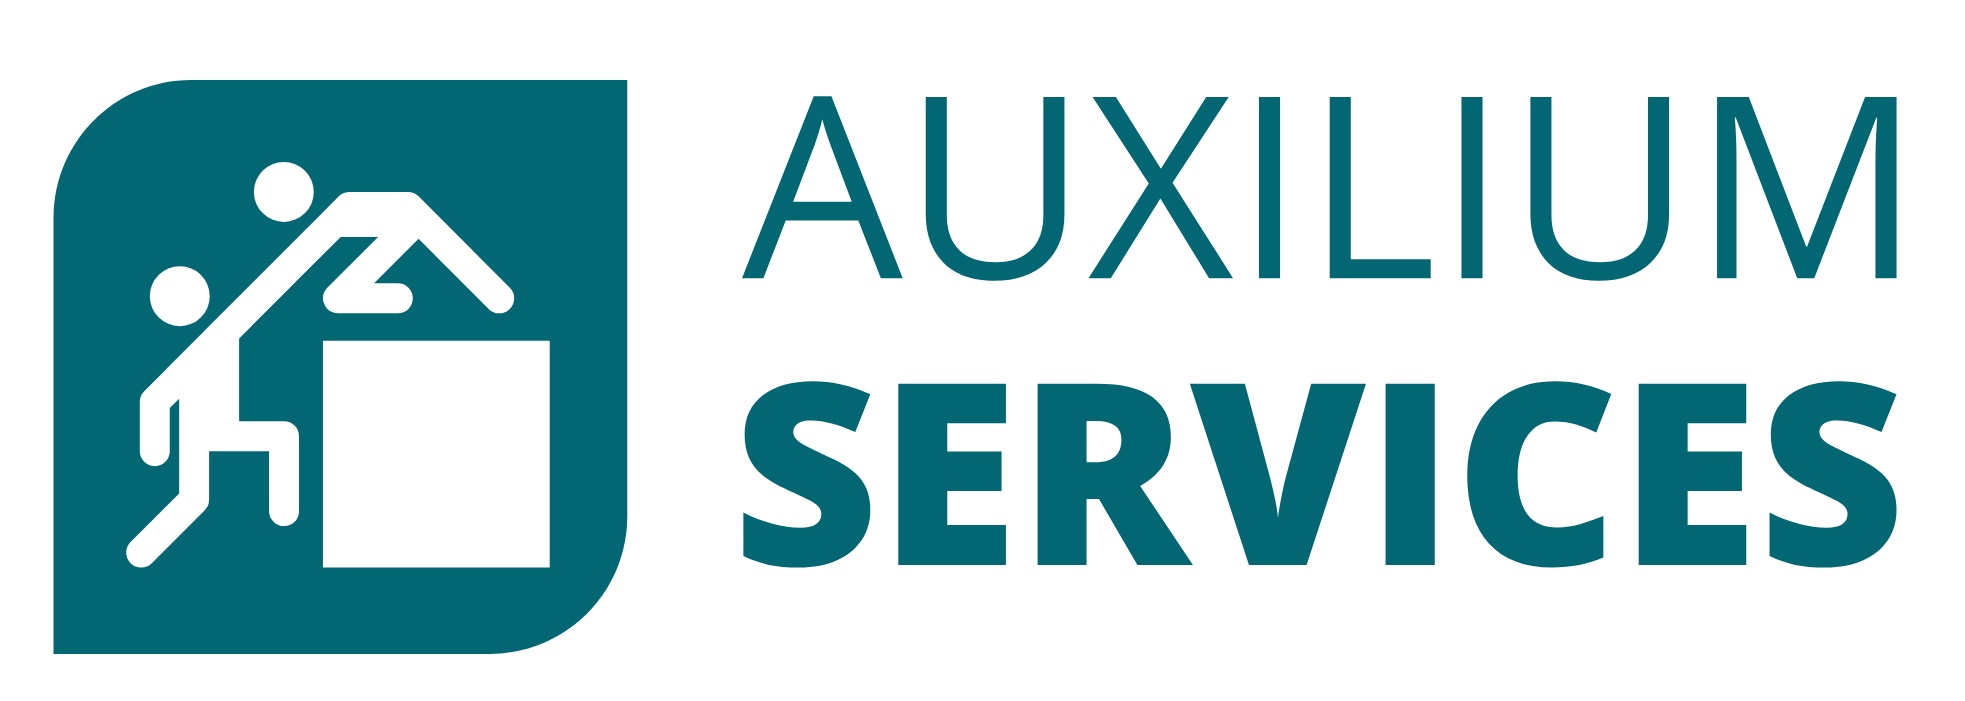 Auxilium Services